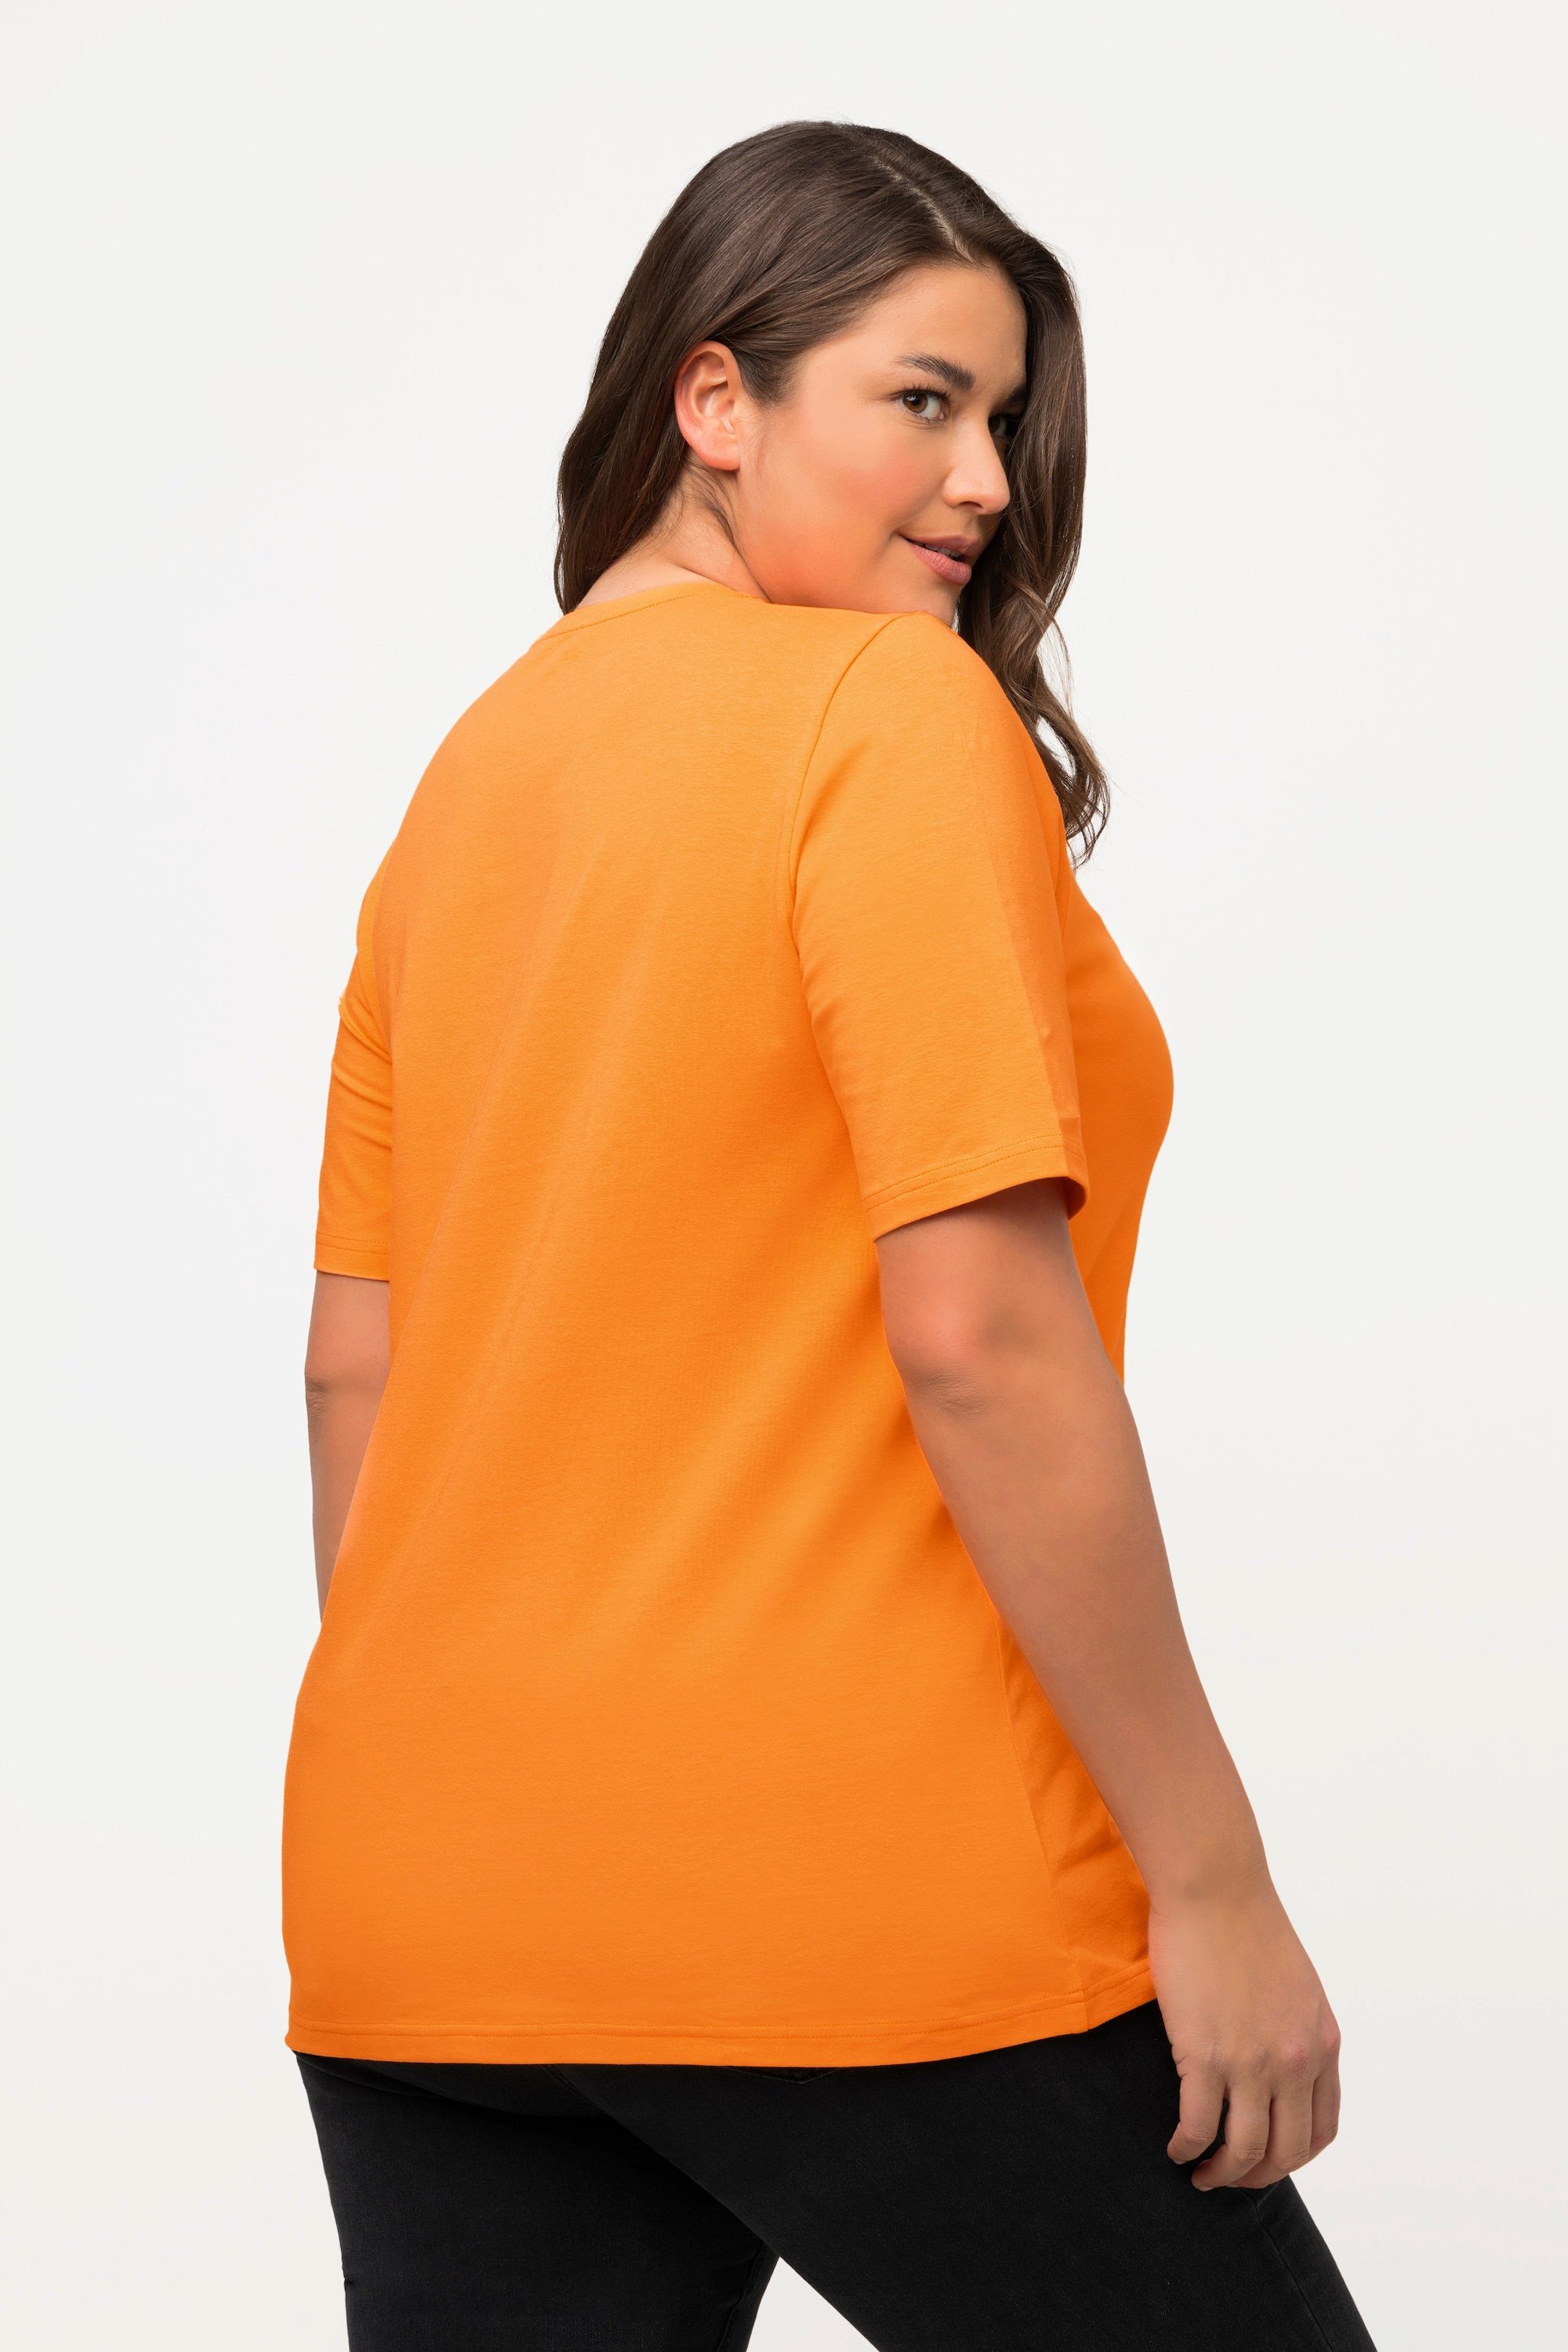 Rundhalsshirt orange Ulla cantaloupe Halbarm V-Ausschnitt T-Shirt Popken A-Linie